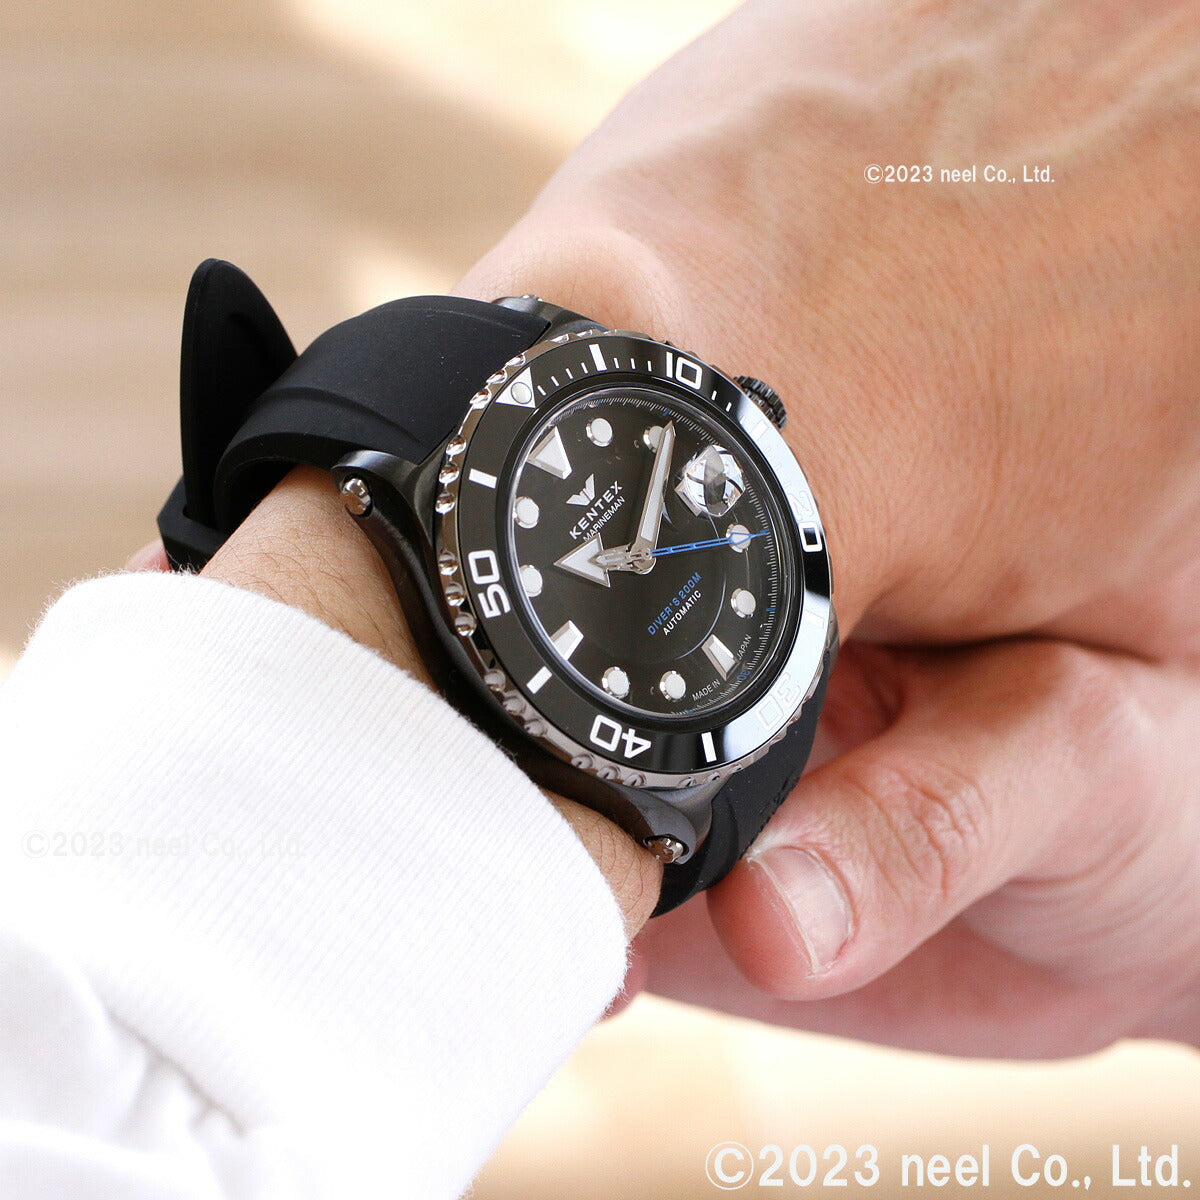 ケンテックス KENTEX 腕時計 時計 メンズ ダイバーズ 自動巻き マリンマン シーホースII 日本製 S706M-23